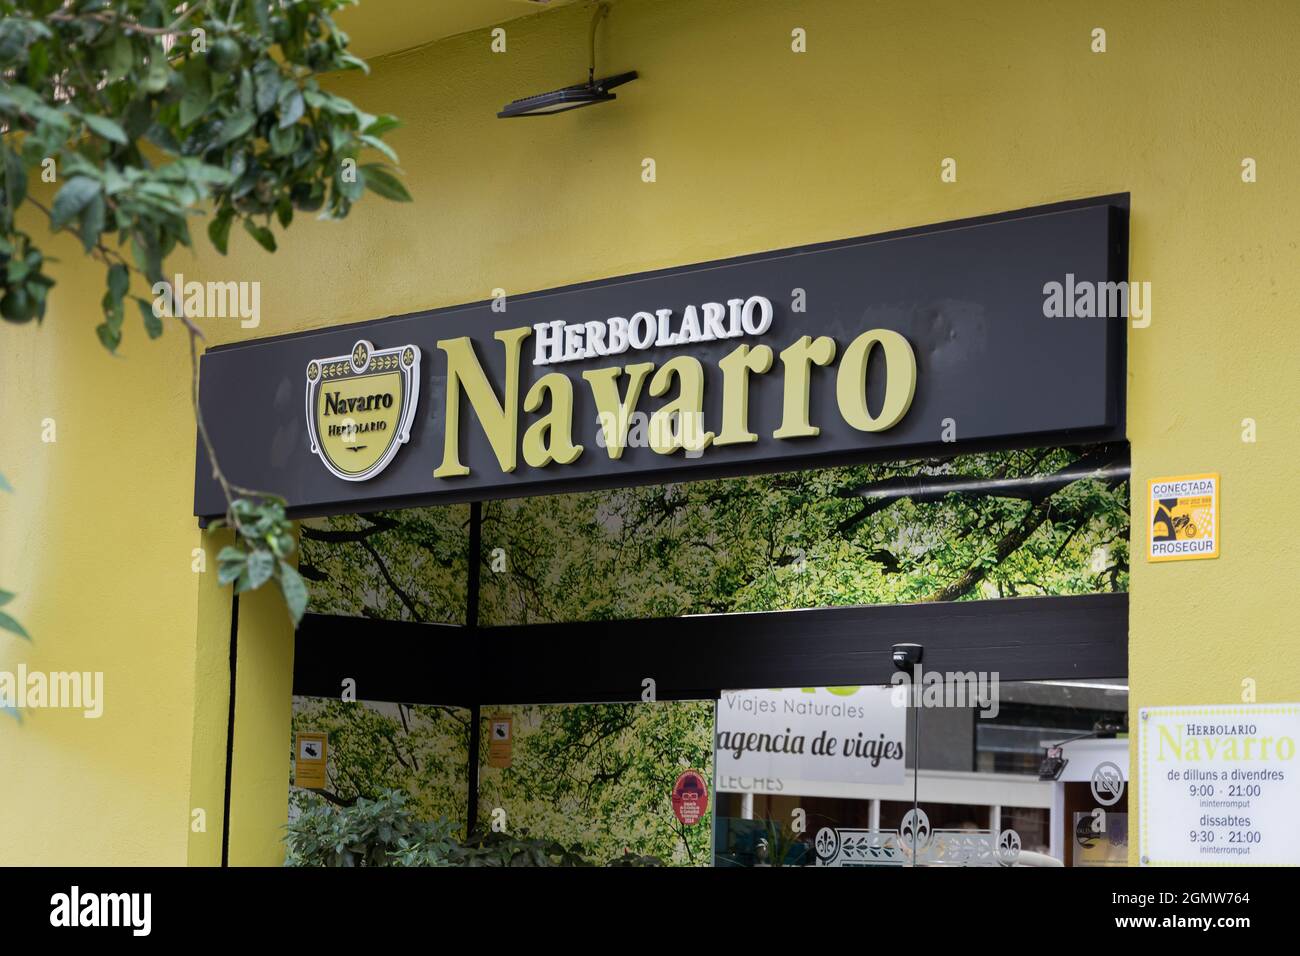 VALENCIA, SPAIN - SEPTEMBER 13, 2021: Herbolario Navarro sells eco, healty, natural products Stock Photo